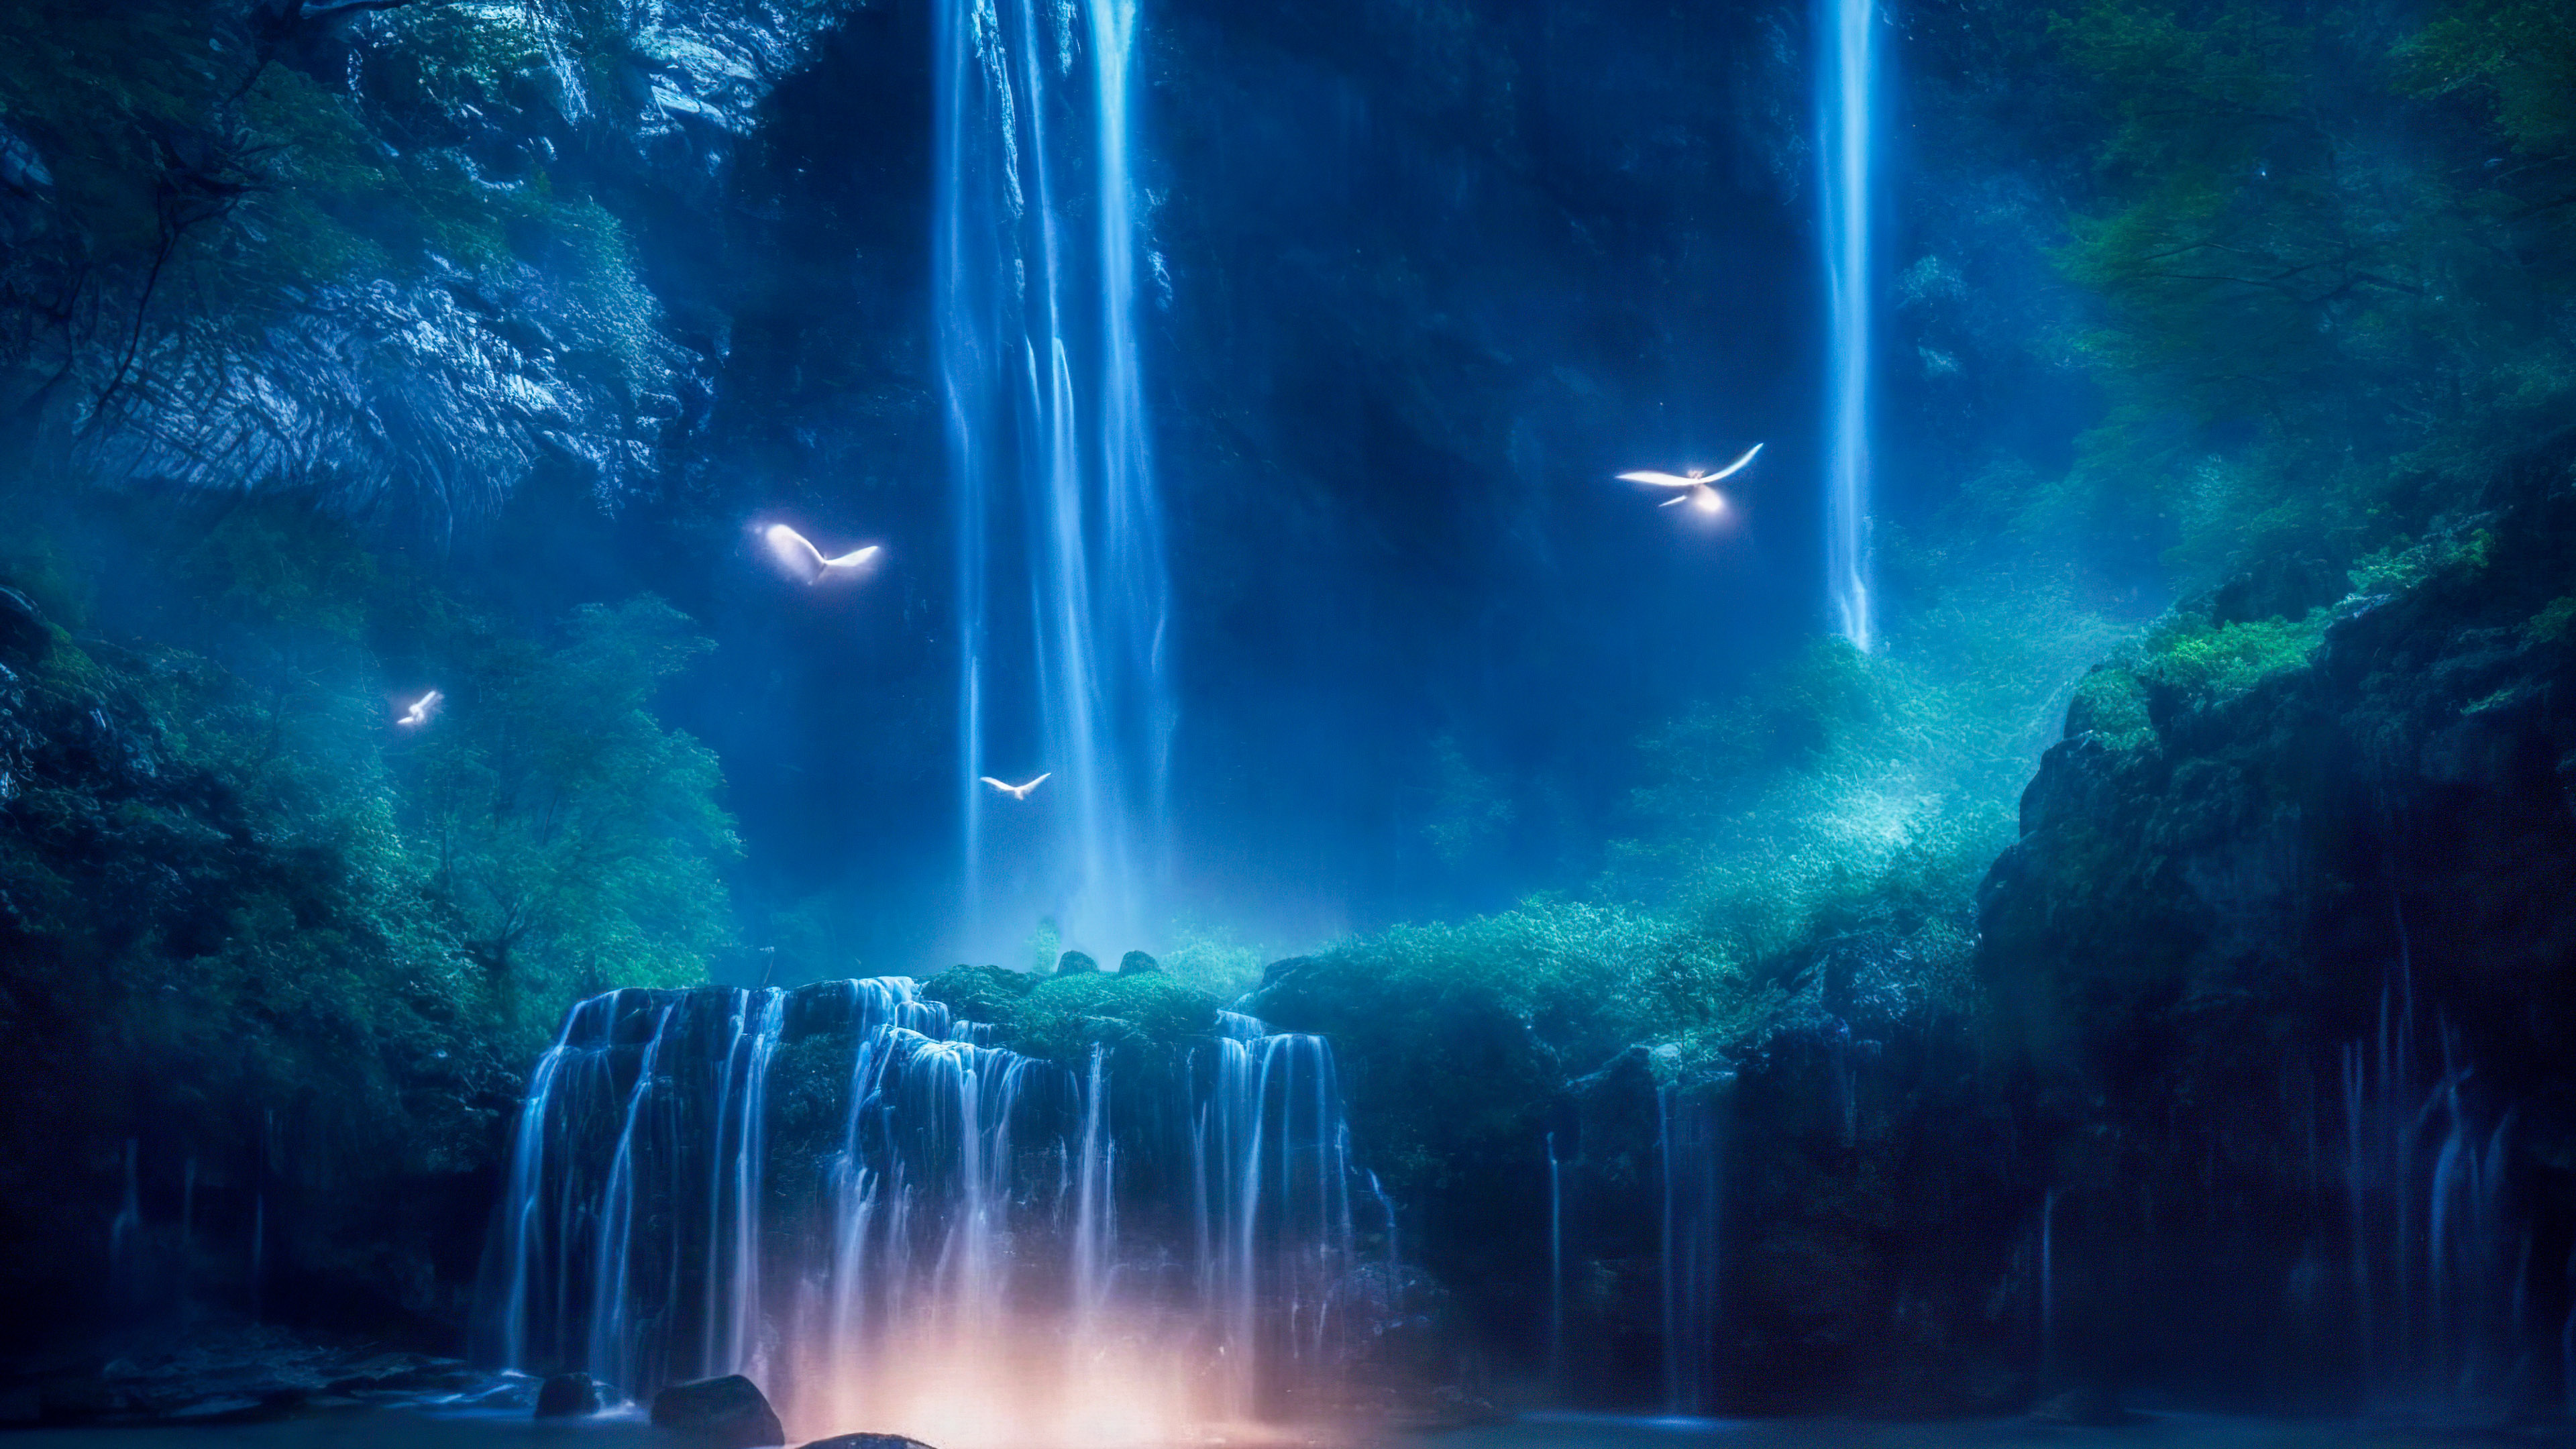 Vivez l'enchantement d'une cascade magique illuminée par le clair de lune, avec des lucioles dansant autour de ses eaux en cascade, grâce à notre fond d'écran en 4K des paysages pour votre PC.